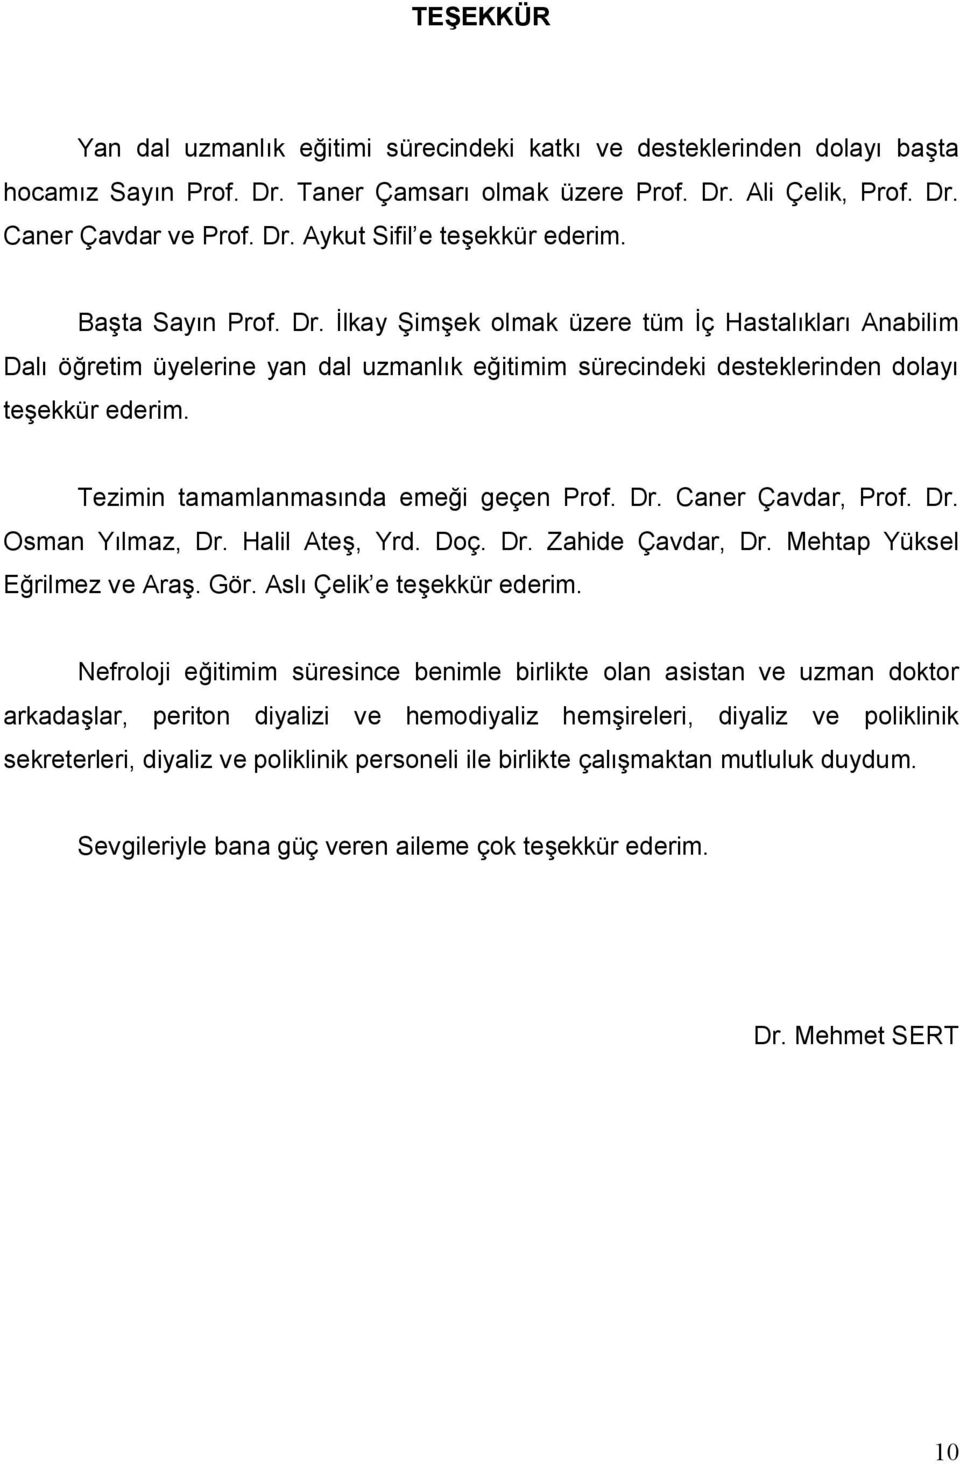 Tezimin tamamlanmasında emeği geçen Prof. Dr. Caner Çavdar, Prof. Dr. Osman Yılmaz, Dr. Halil Ateş, Yrd. Doç. Dr. Zahide Çavdar, Dr. Mehtap Yüksel Eğrilmez ve Araş. Gör. Aslı Çelik e teşekkür ederim.